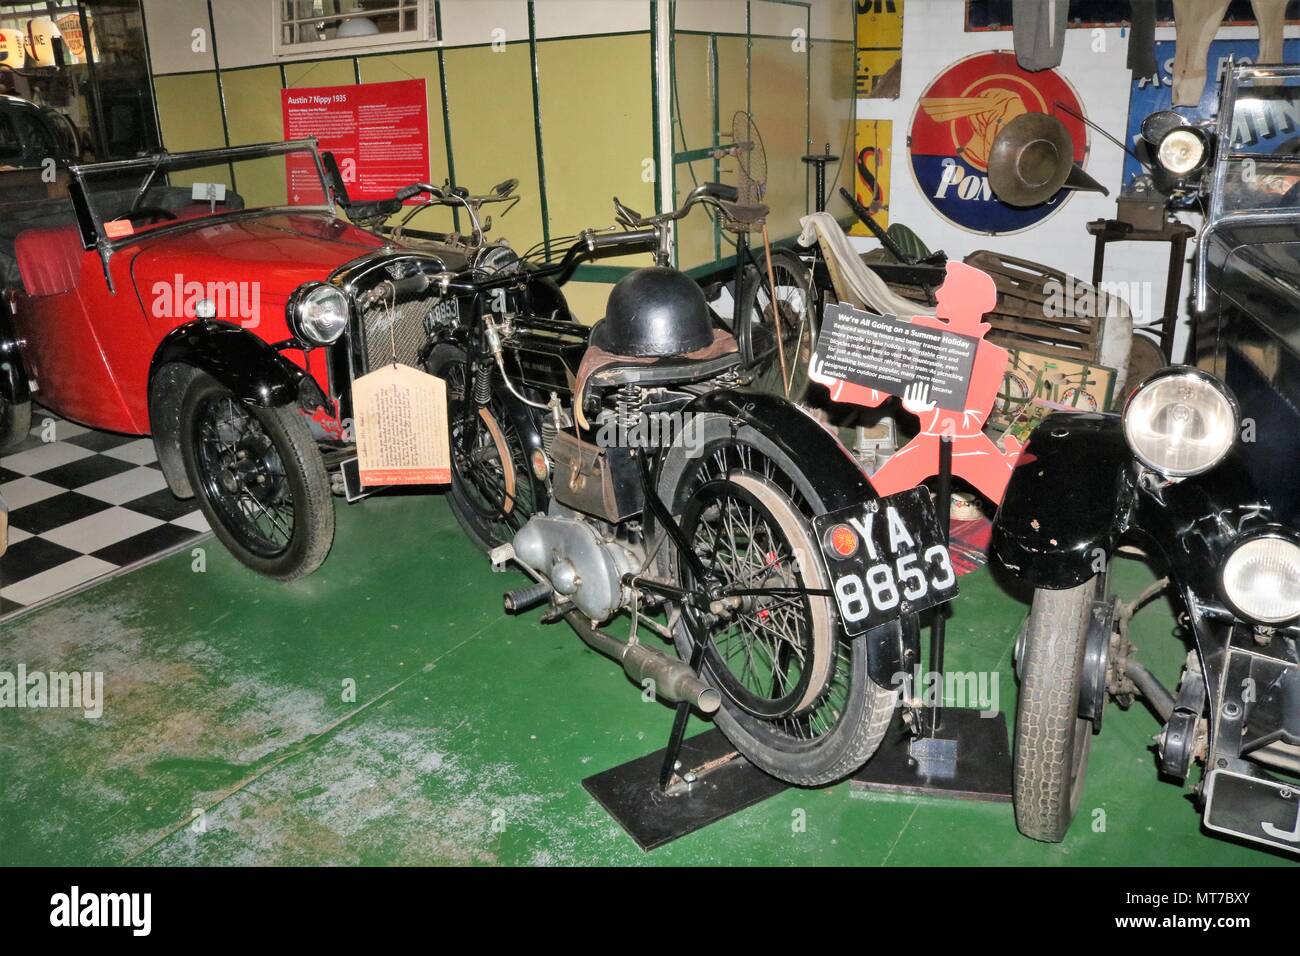 Le Musée des véhicules à moteur de Cotswold dans les Cotswolds village de Bourton-on-the-water, Gloucestershire, Angleterre. Véhicules anciens et l'affiche. Banque D'Images